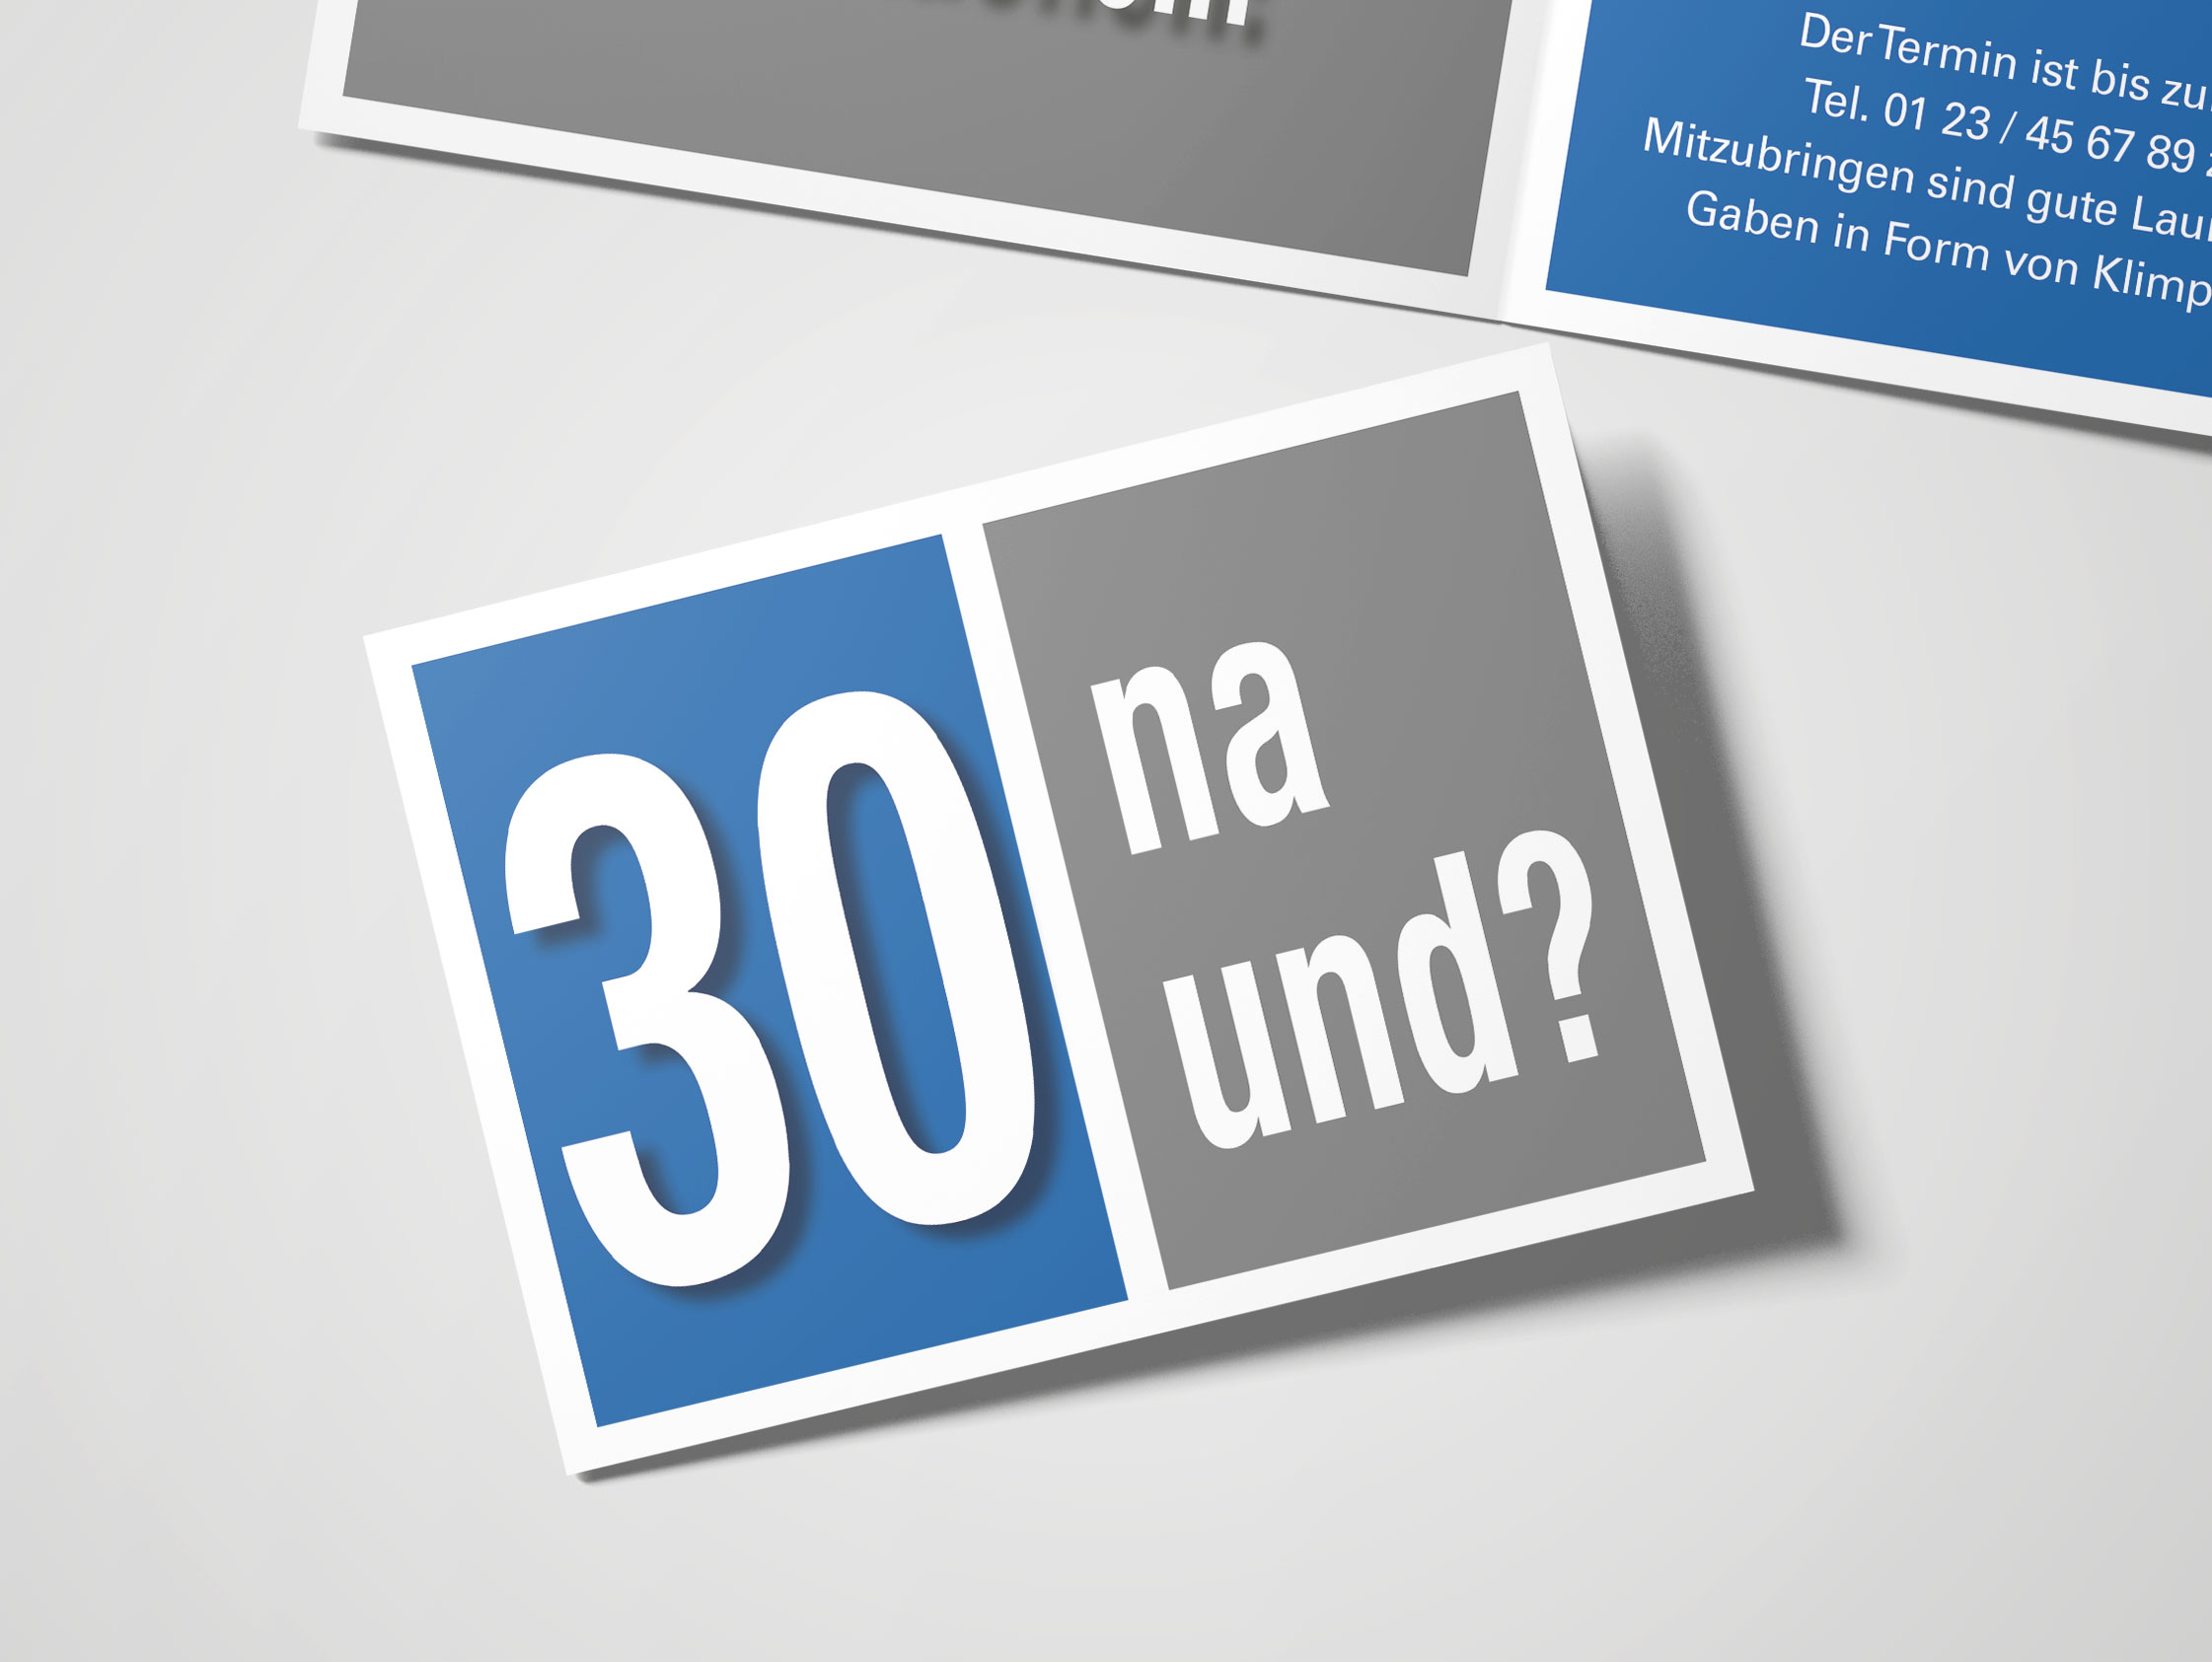 Geburtstag Einladungskarten 30 Geburtstag Na Und Blau 30 Geburtstag Einladung Runder Geburtstag Geburtstag Wirmachendeinekarte